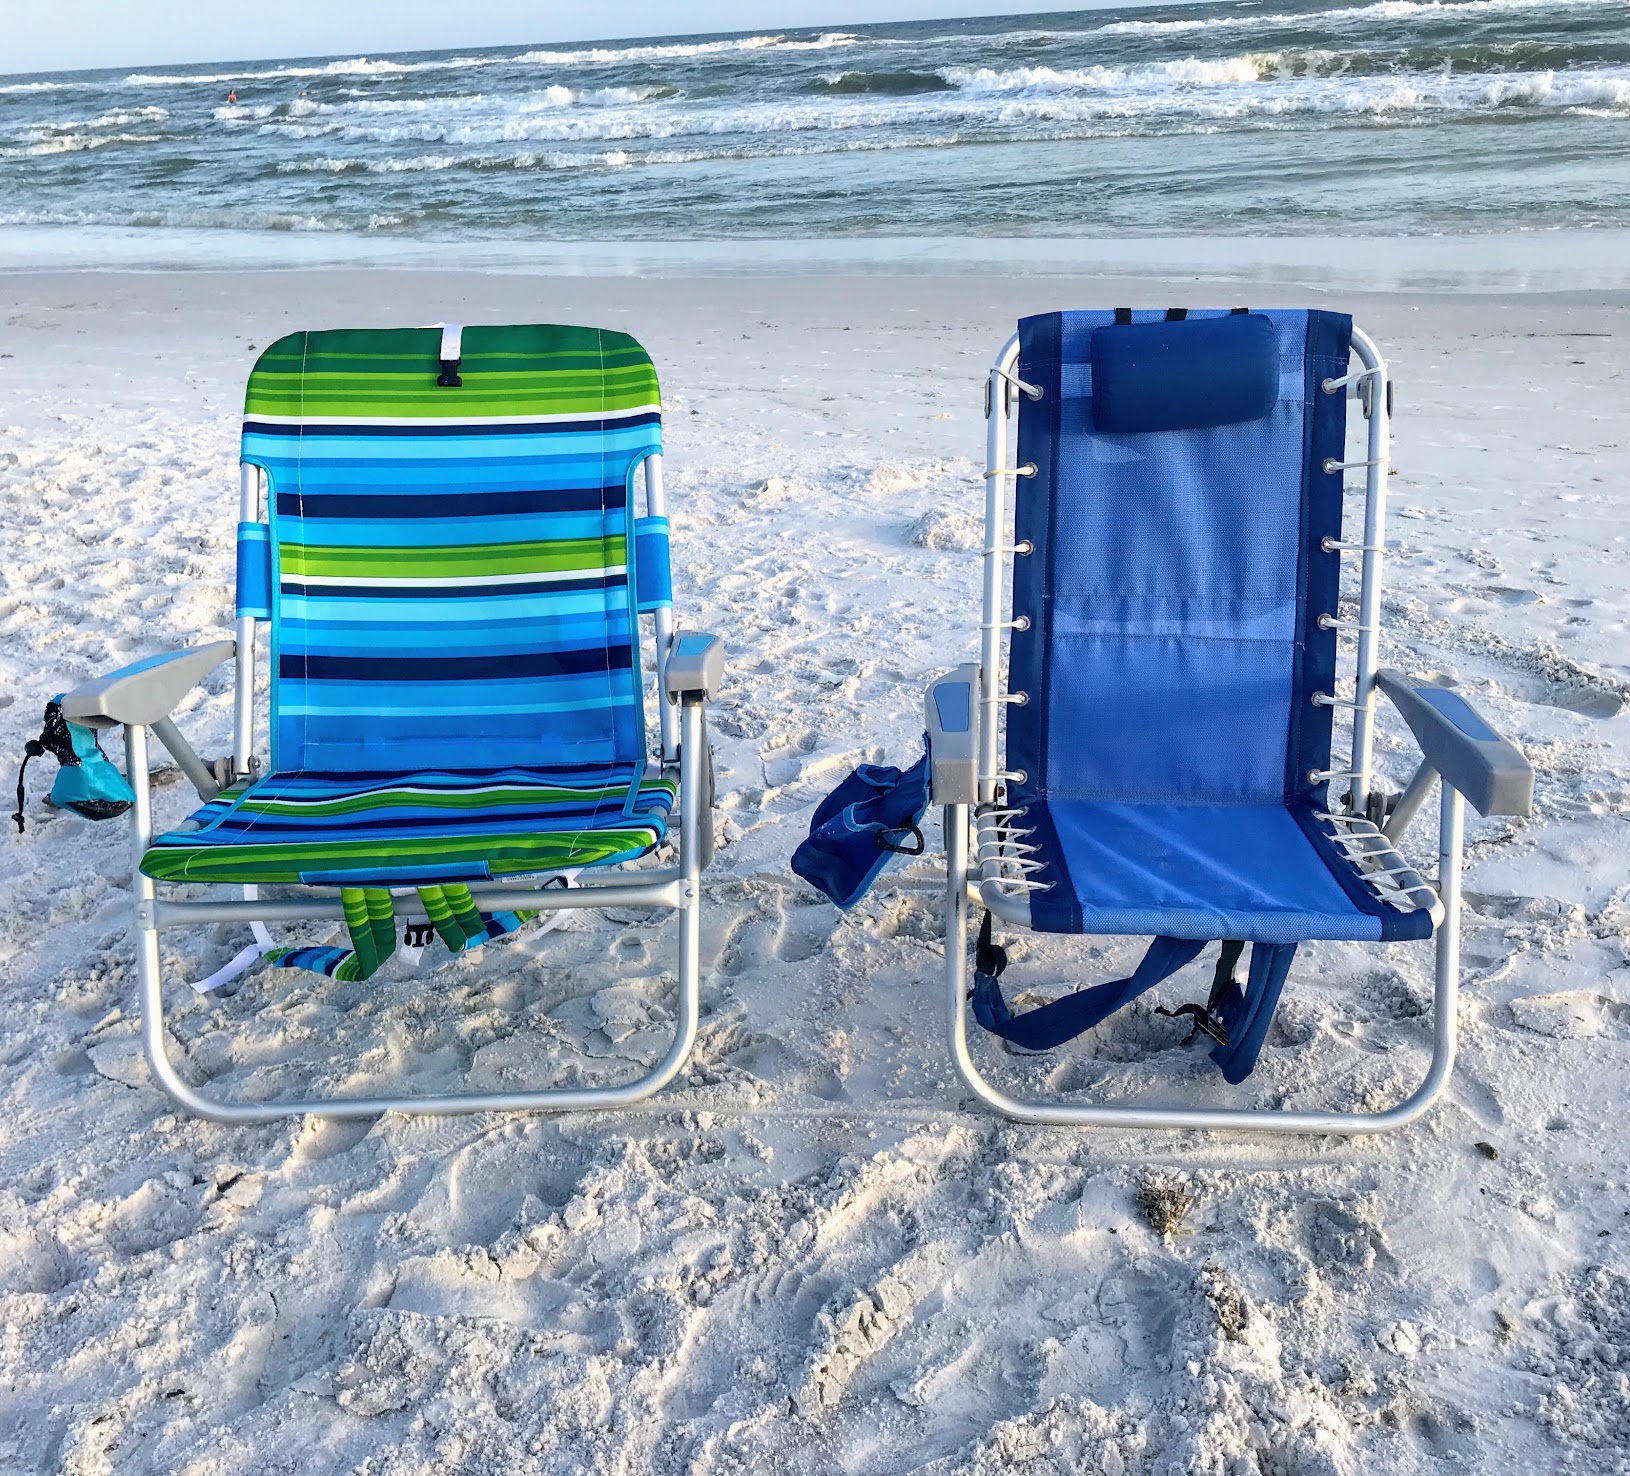 rio beach beach chair